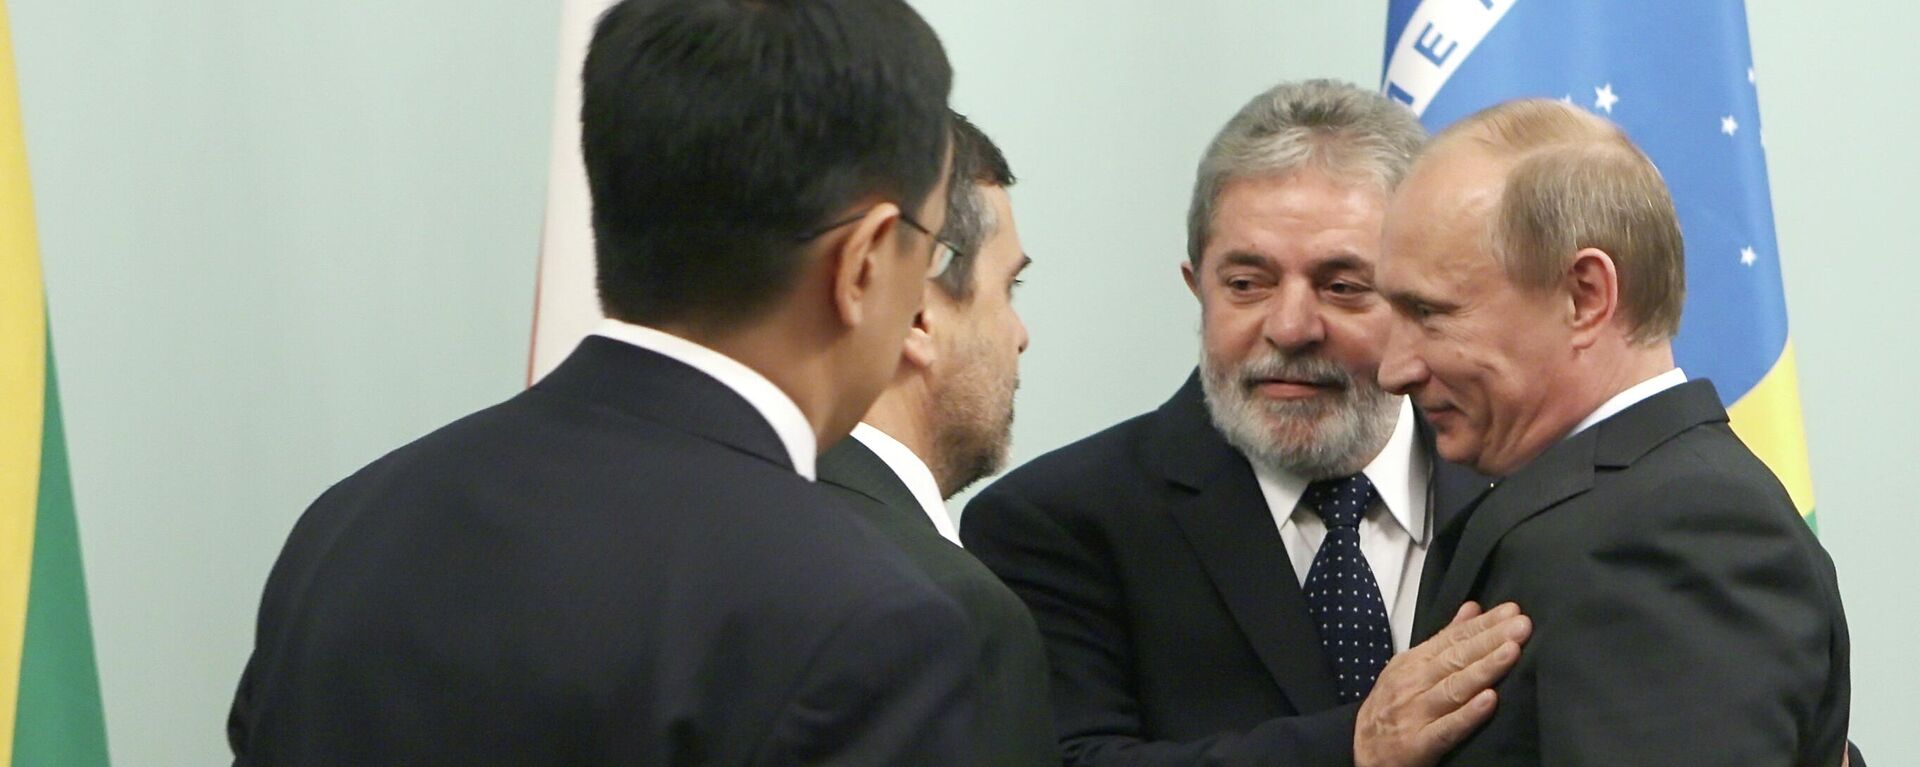 Encontro entre Luiz Inácio Lula da Silva, então presidente da República, e Vladimir Putin, presidente da Rússia, em 14 de maio de 2010 (foto de arquivo) - Sputnik Brasil, 1920, 01.11.2022